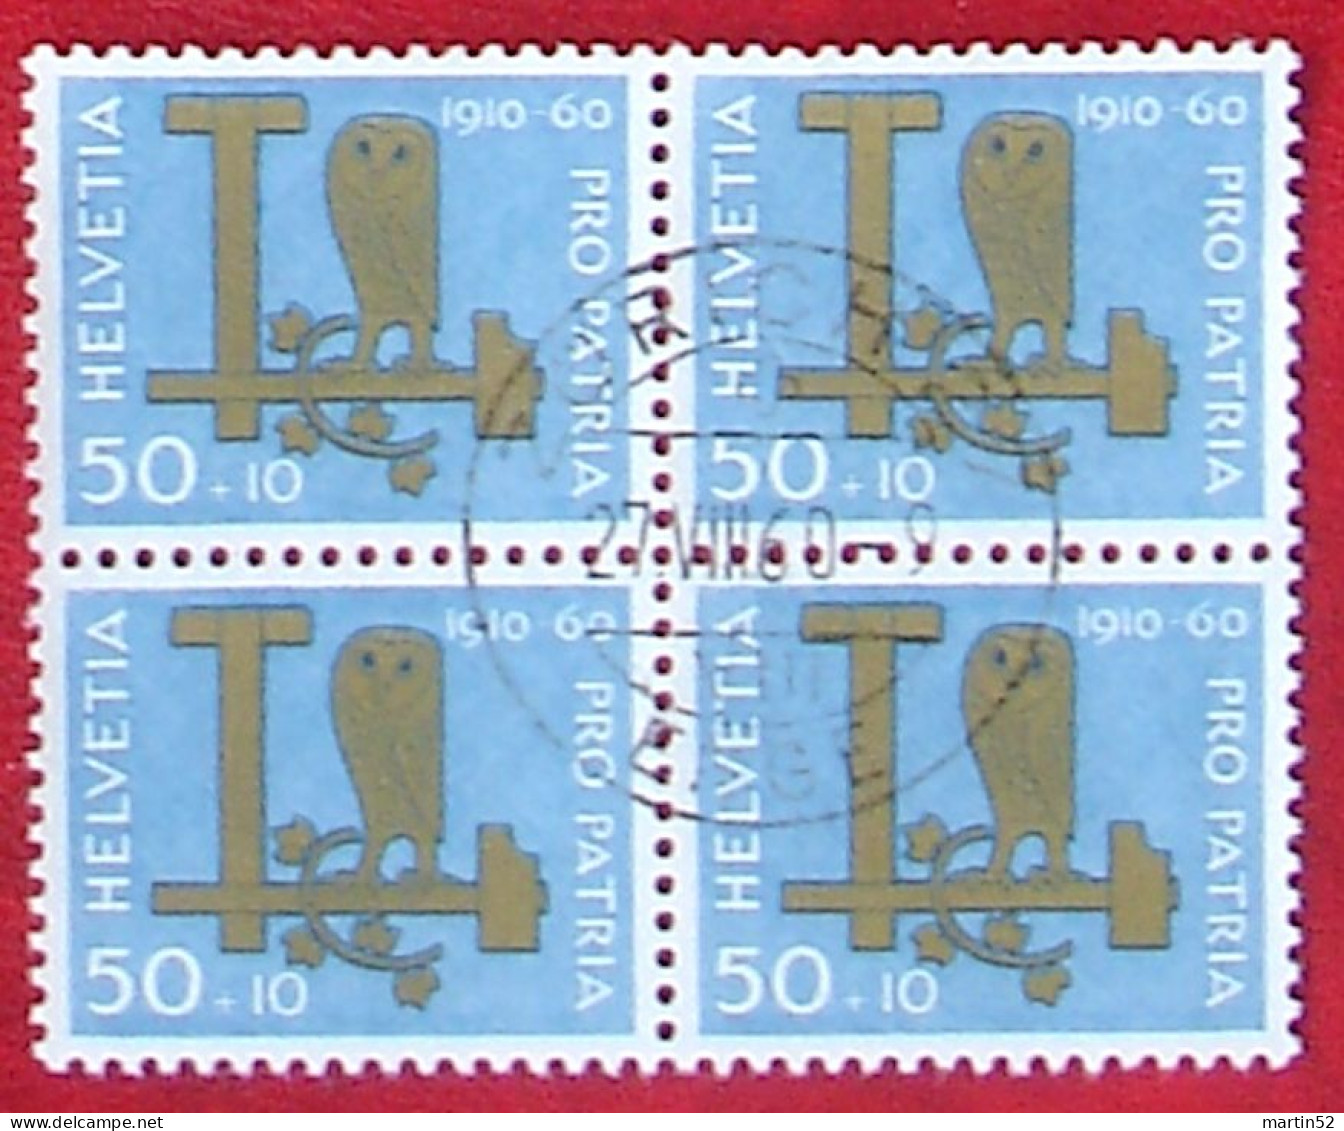 Schweiz Suisse Pro Patria 1960: Eule Hibou Owl Zu WII 100 Mi 718 Yv 665 Block Mit O ZÜRICH 27.VIII.60 (Zu CHF 32.00) - Eulenvögel